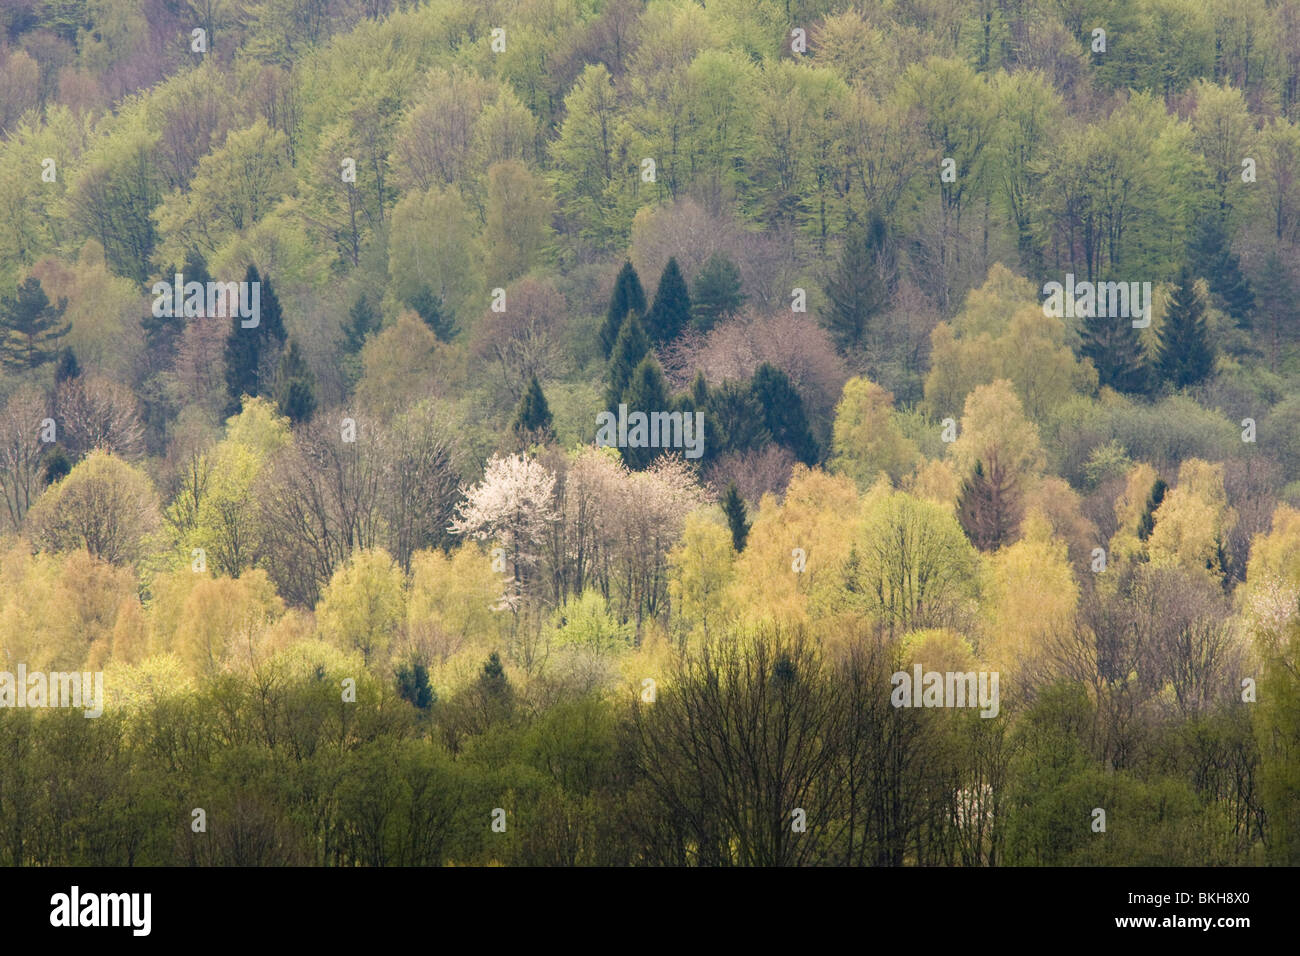 In het voorjaar vormen de gemengde bossen in het nationaal park Bieszczady in de Poolse Karpaten een bonte lappendeken van donkergroene naaldbomen en fris lichtgroene loofbomen waarvan een enkele in bloei staat. I boschi misti in Bieszczady nationa Foto Stock